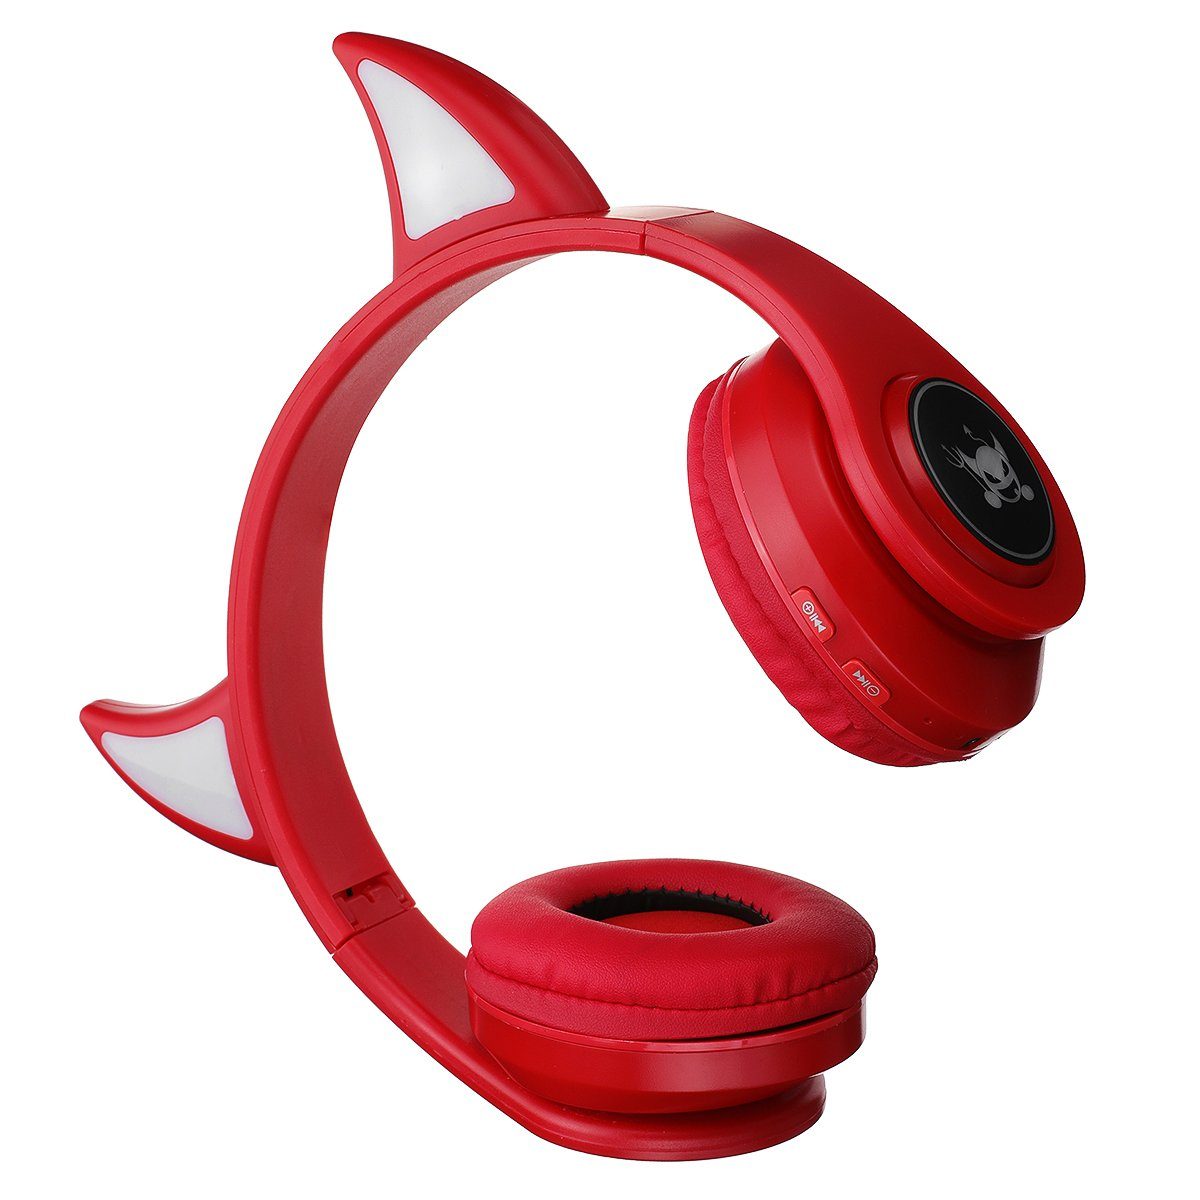 Insma 5.0 Stero Kopfhörer Gaming-Headset, LED-Licht) On-Ear-Kopfhörer bluetooth Rot (Kabelloses